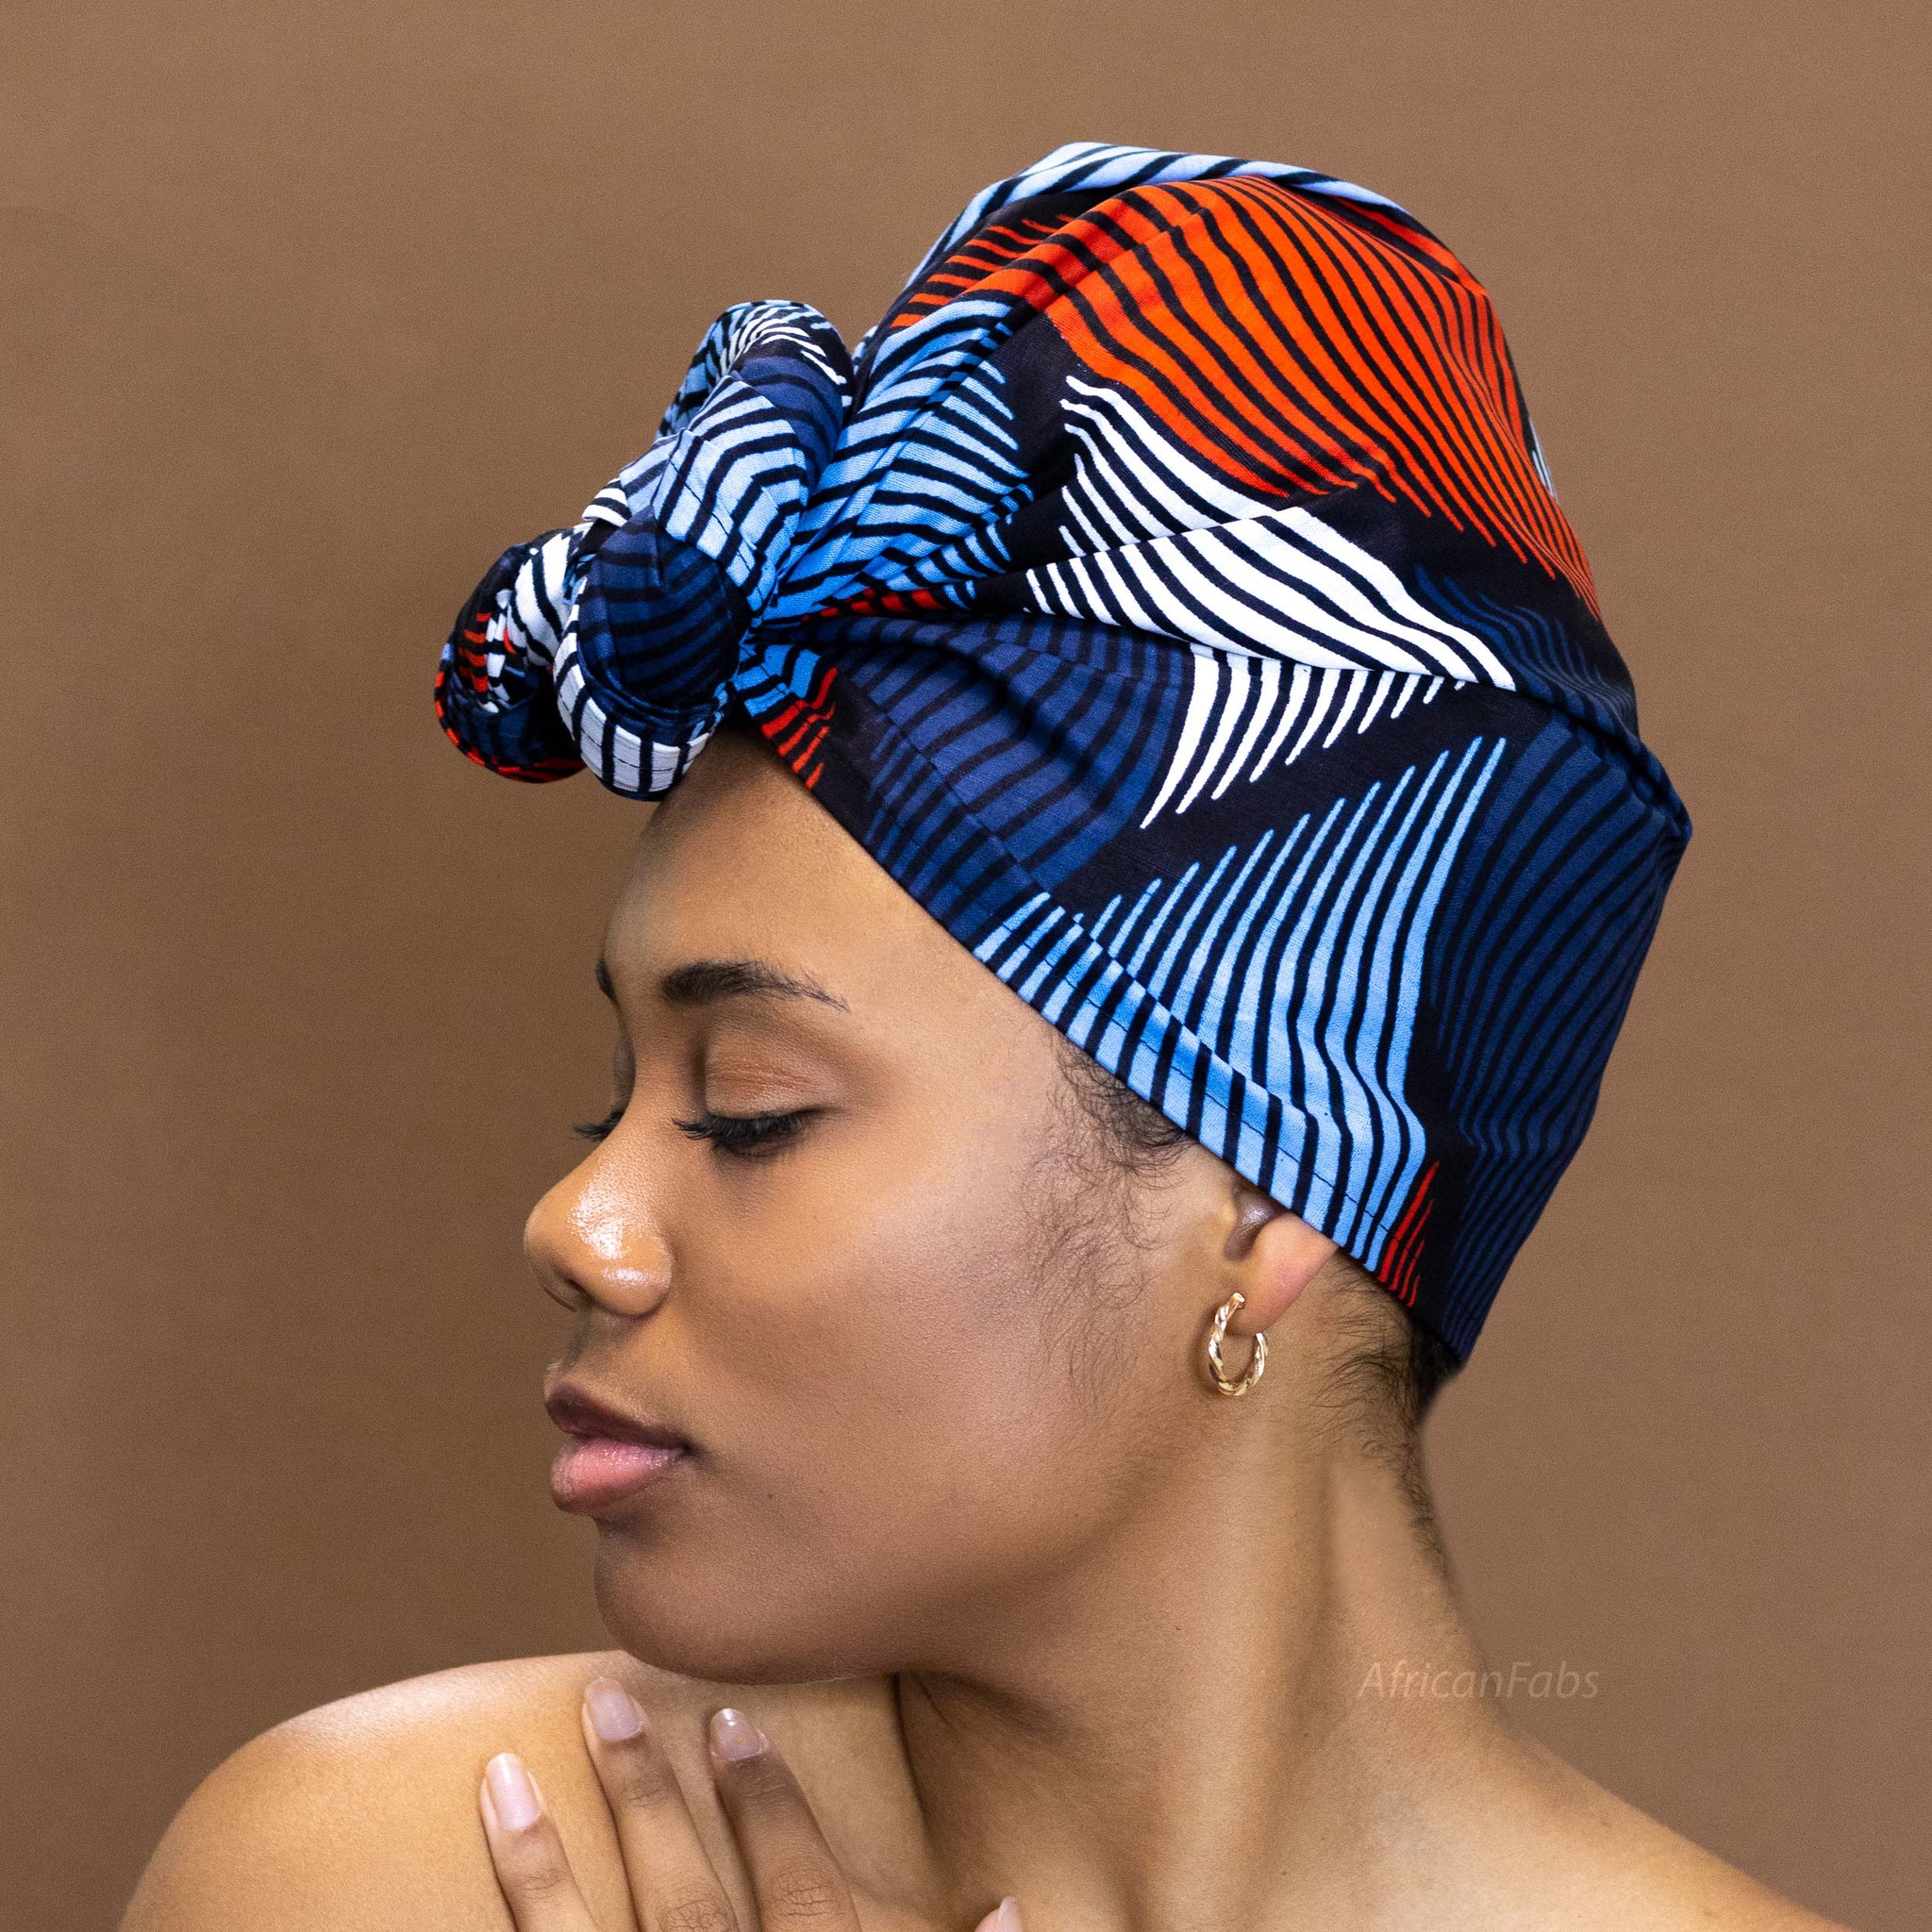 Afrikanisches Kopftuch / headwrap - Blau Rot Swirl